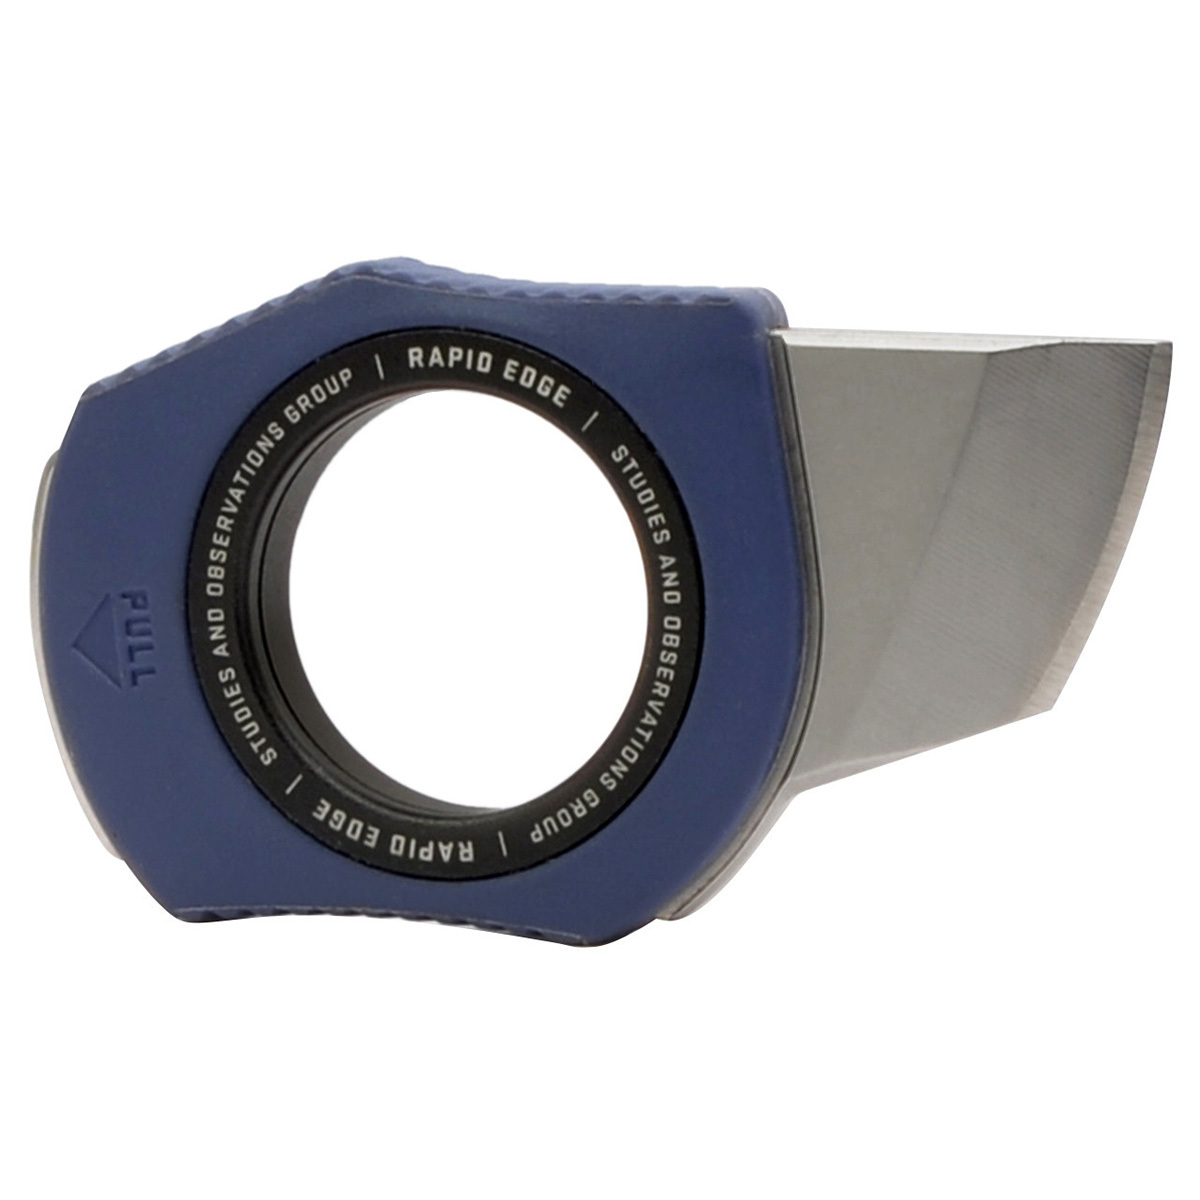 Нож скрытого ношения с фиксированным клинком SOG Rapid Edge 2 см, нержавеющая сталь, рукоять GRN, синий - фото 2